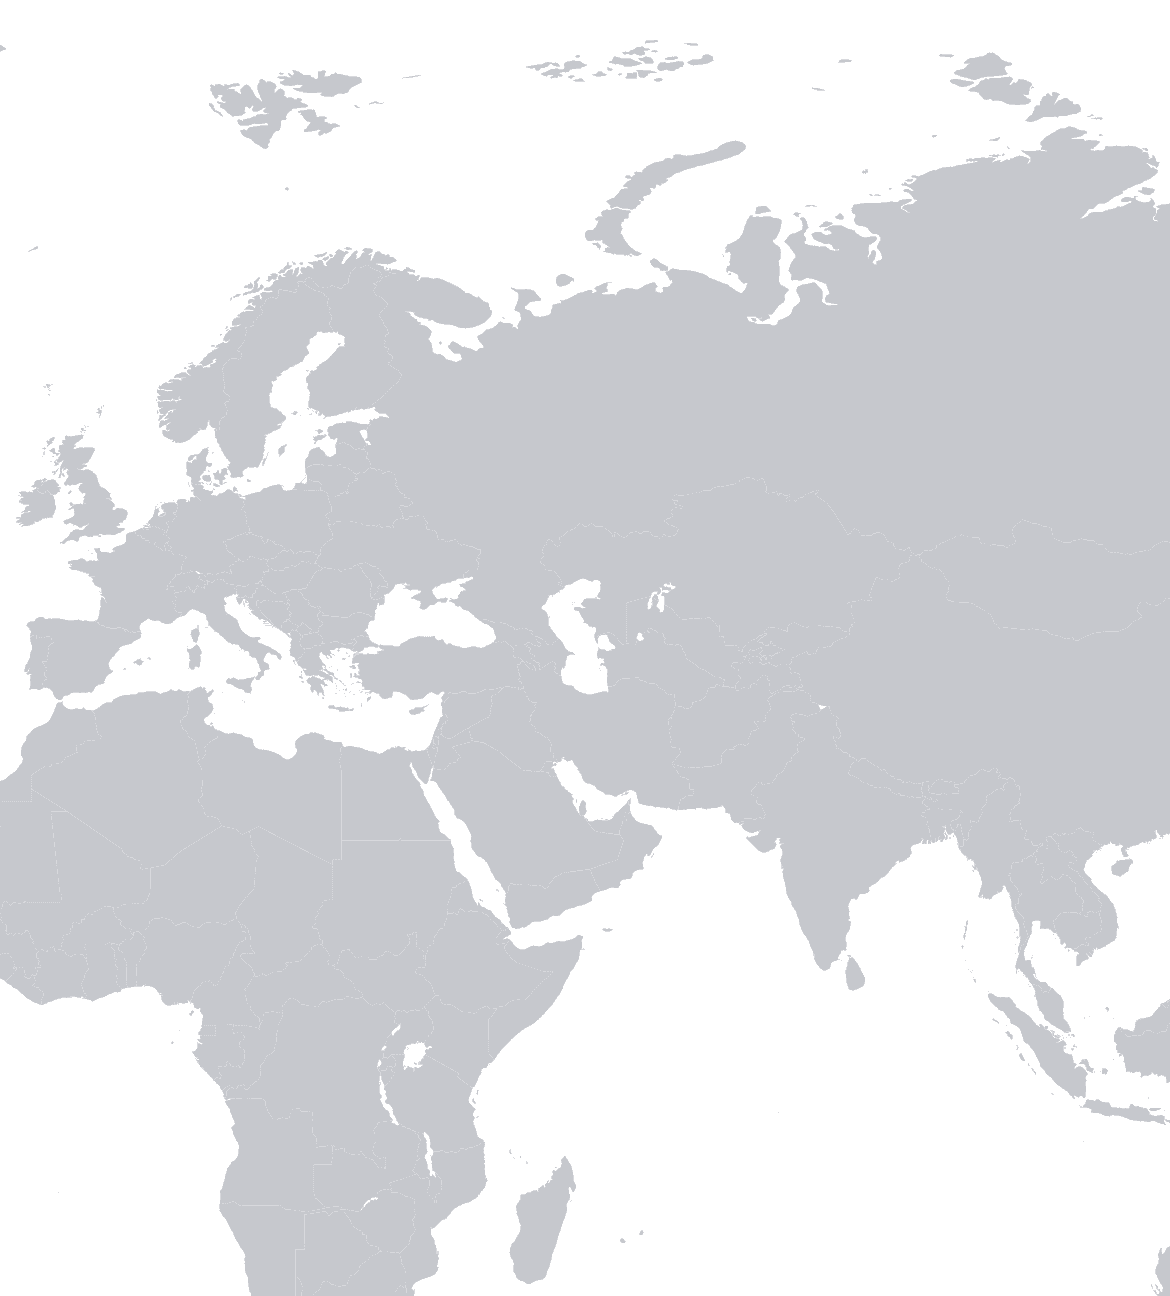 World background image map